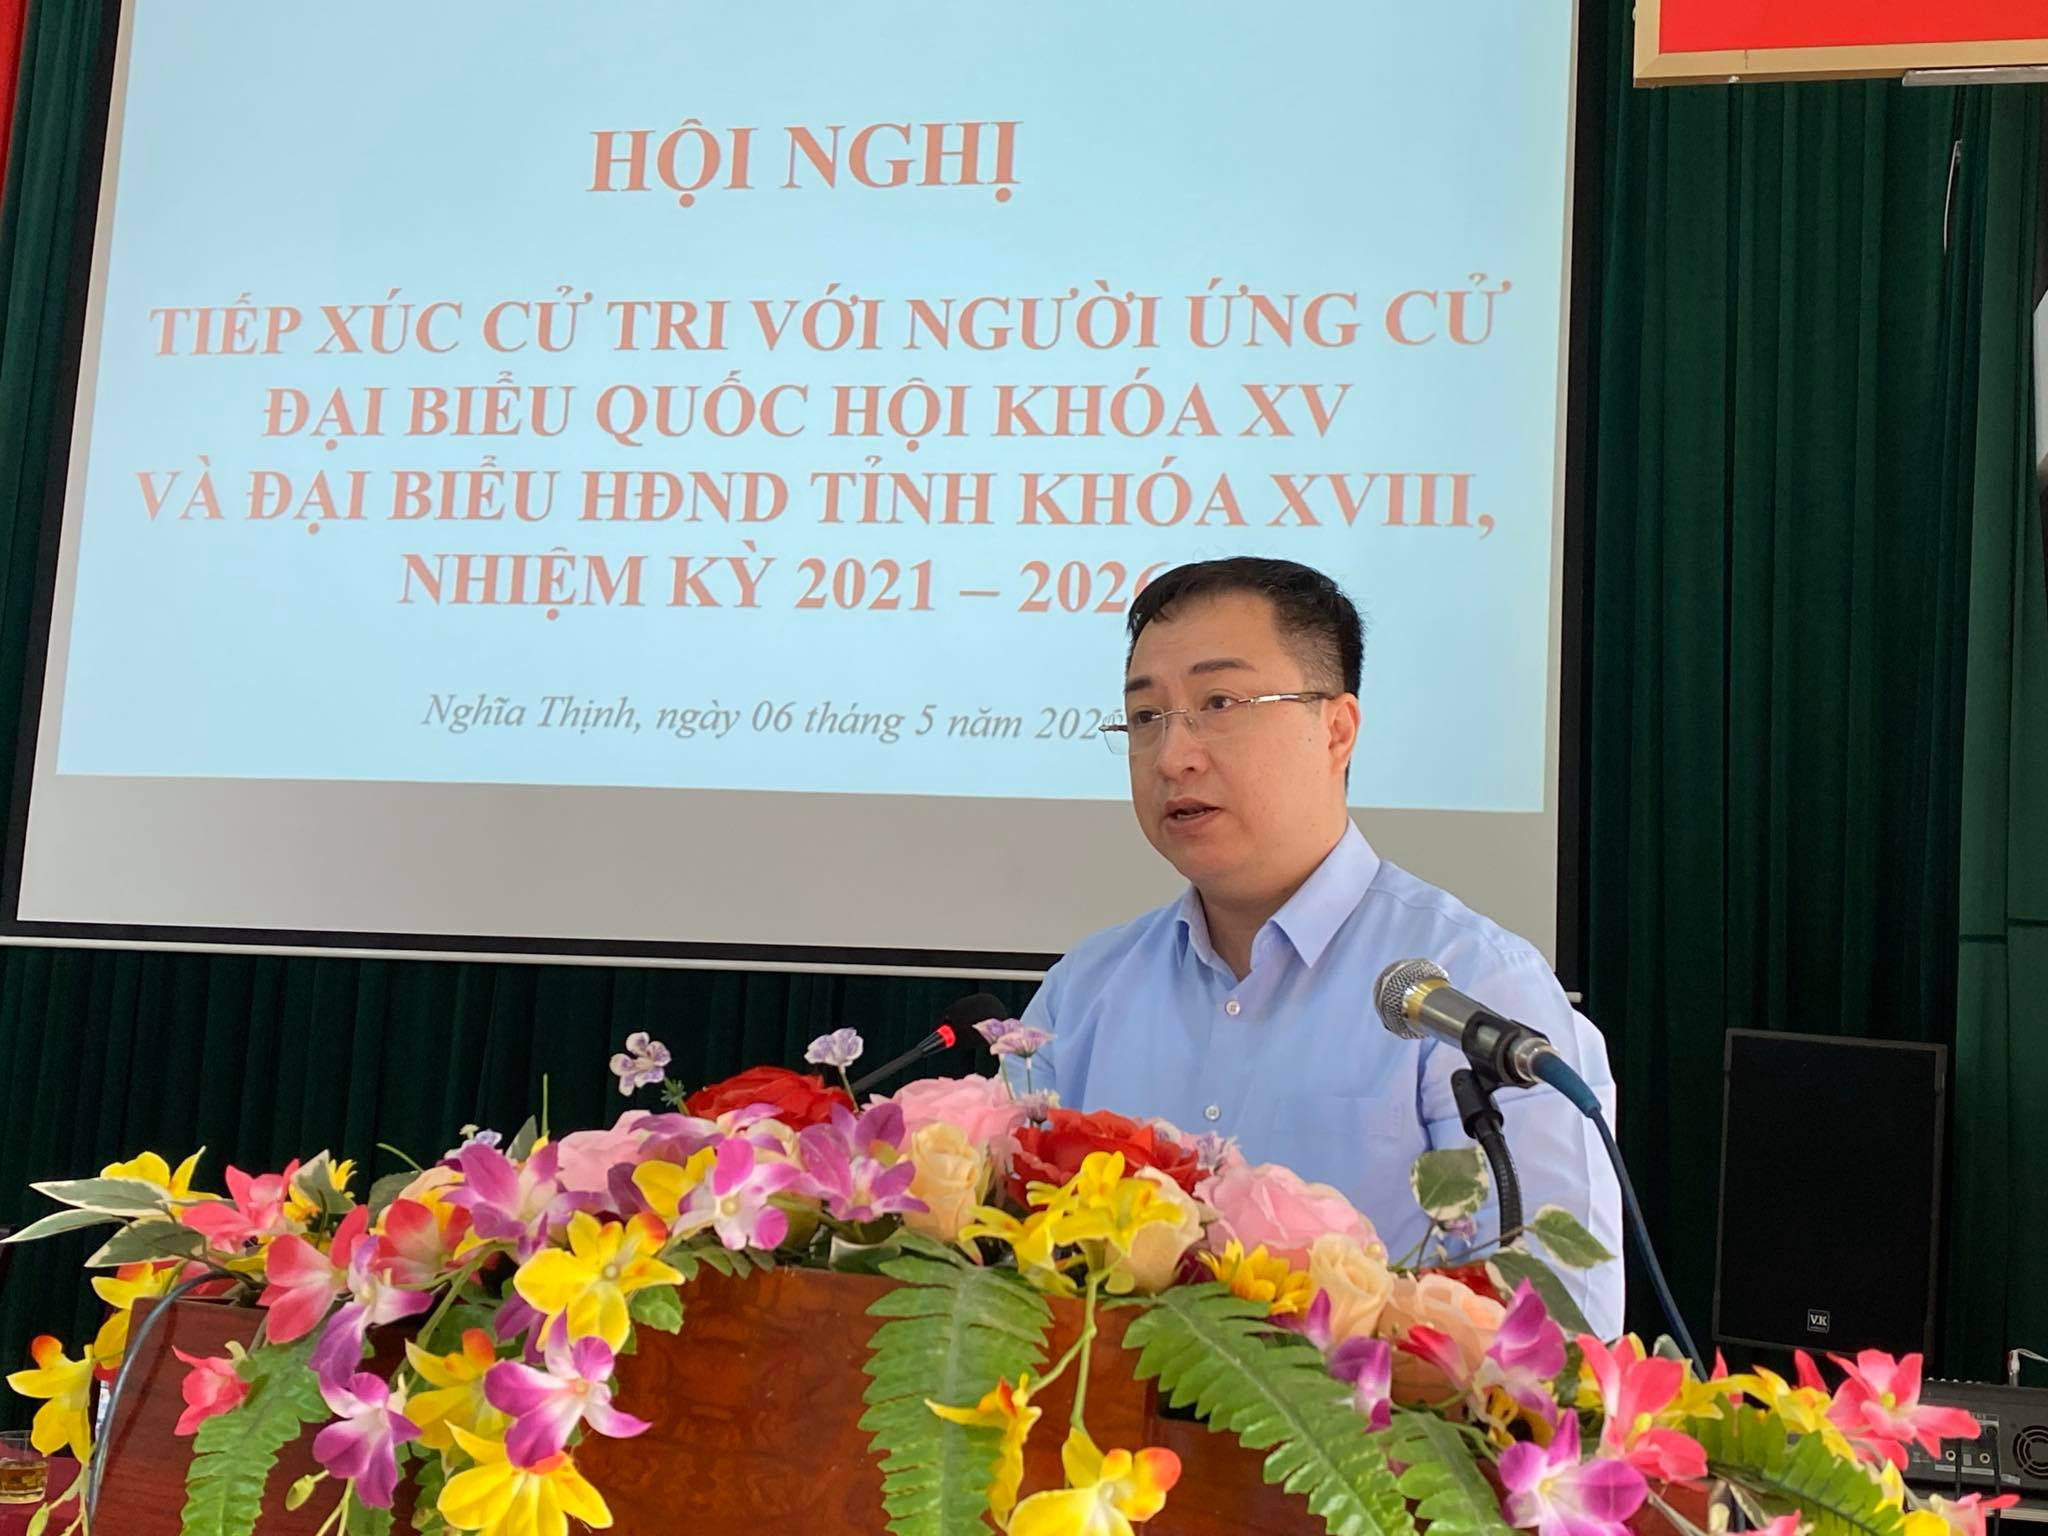 Ông Đặng Xuân Phương – Phó trưởng Ban công tác đại biểu thuộc Ủy ban thường vụ Quốc hội trình bày dự kiến chương trình hành động nếu được bầu làm Đại biểu Quốc hội. Ảnh Minh Thái